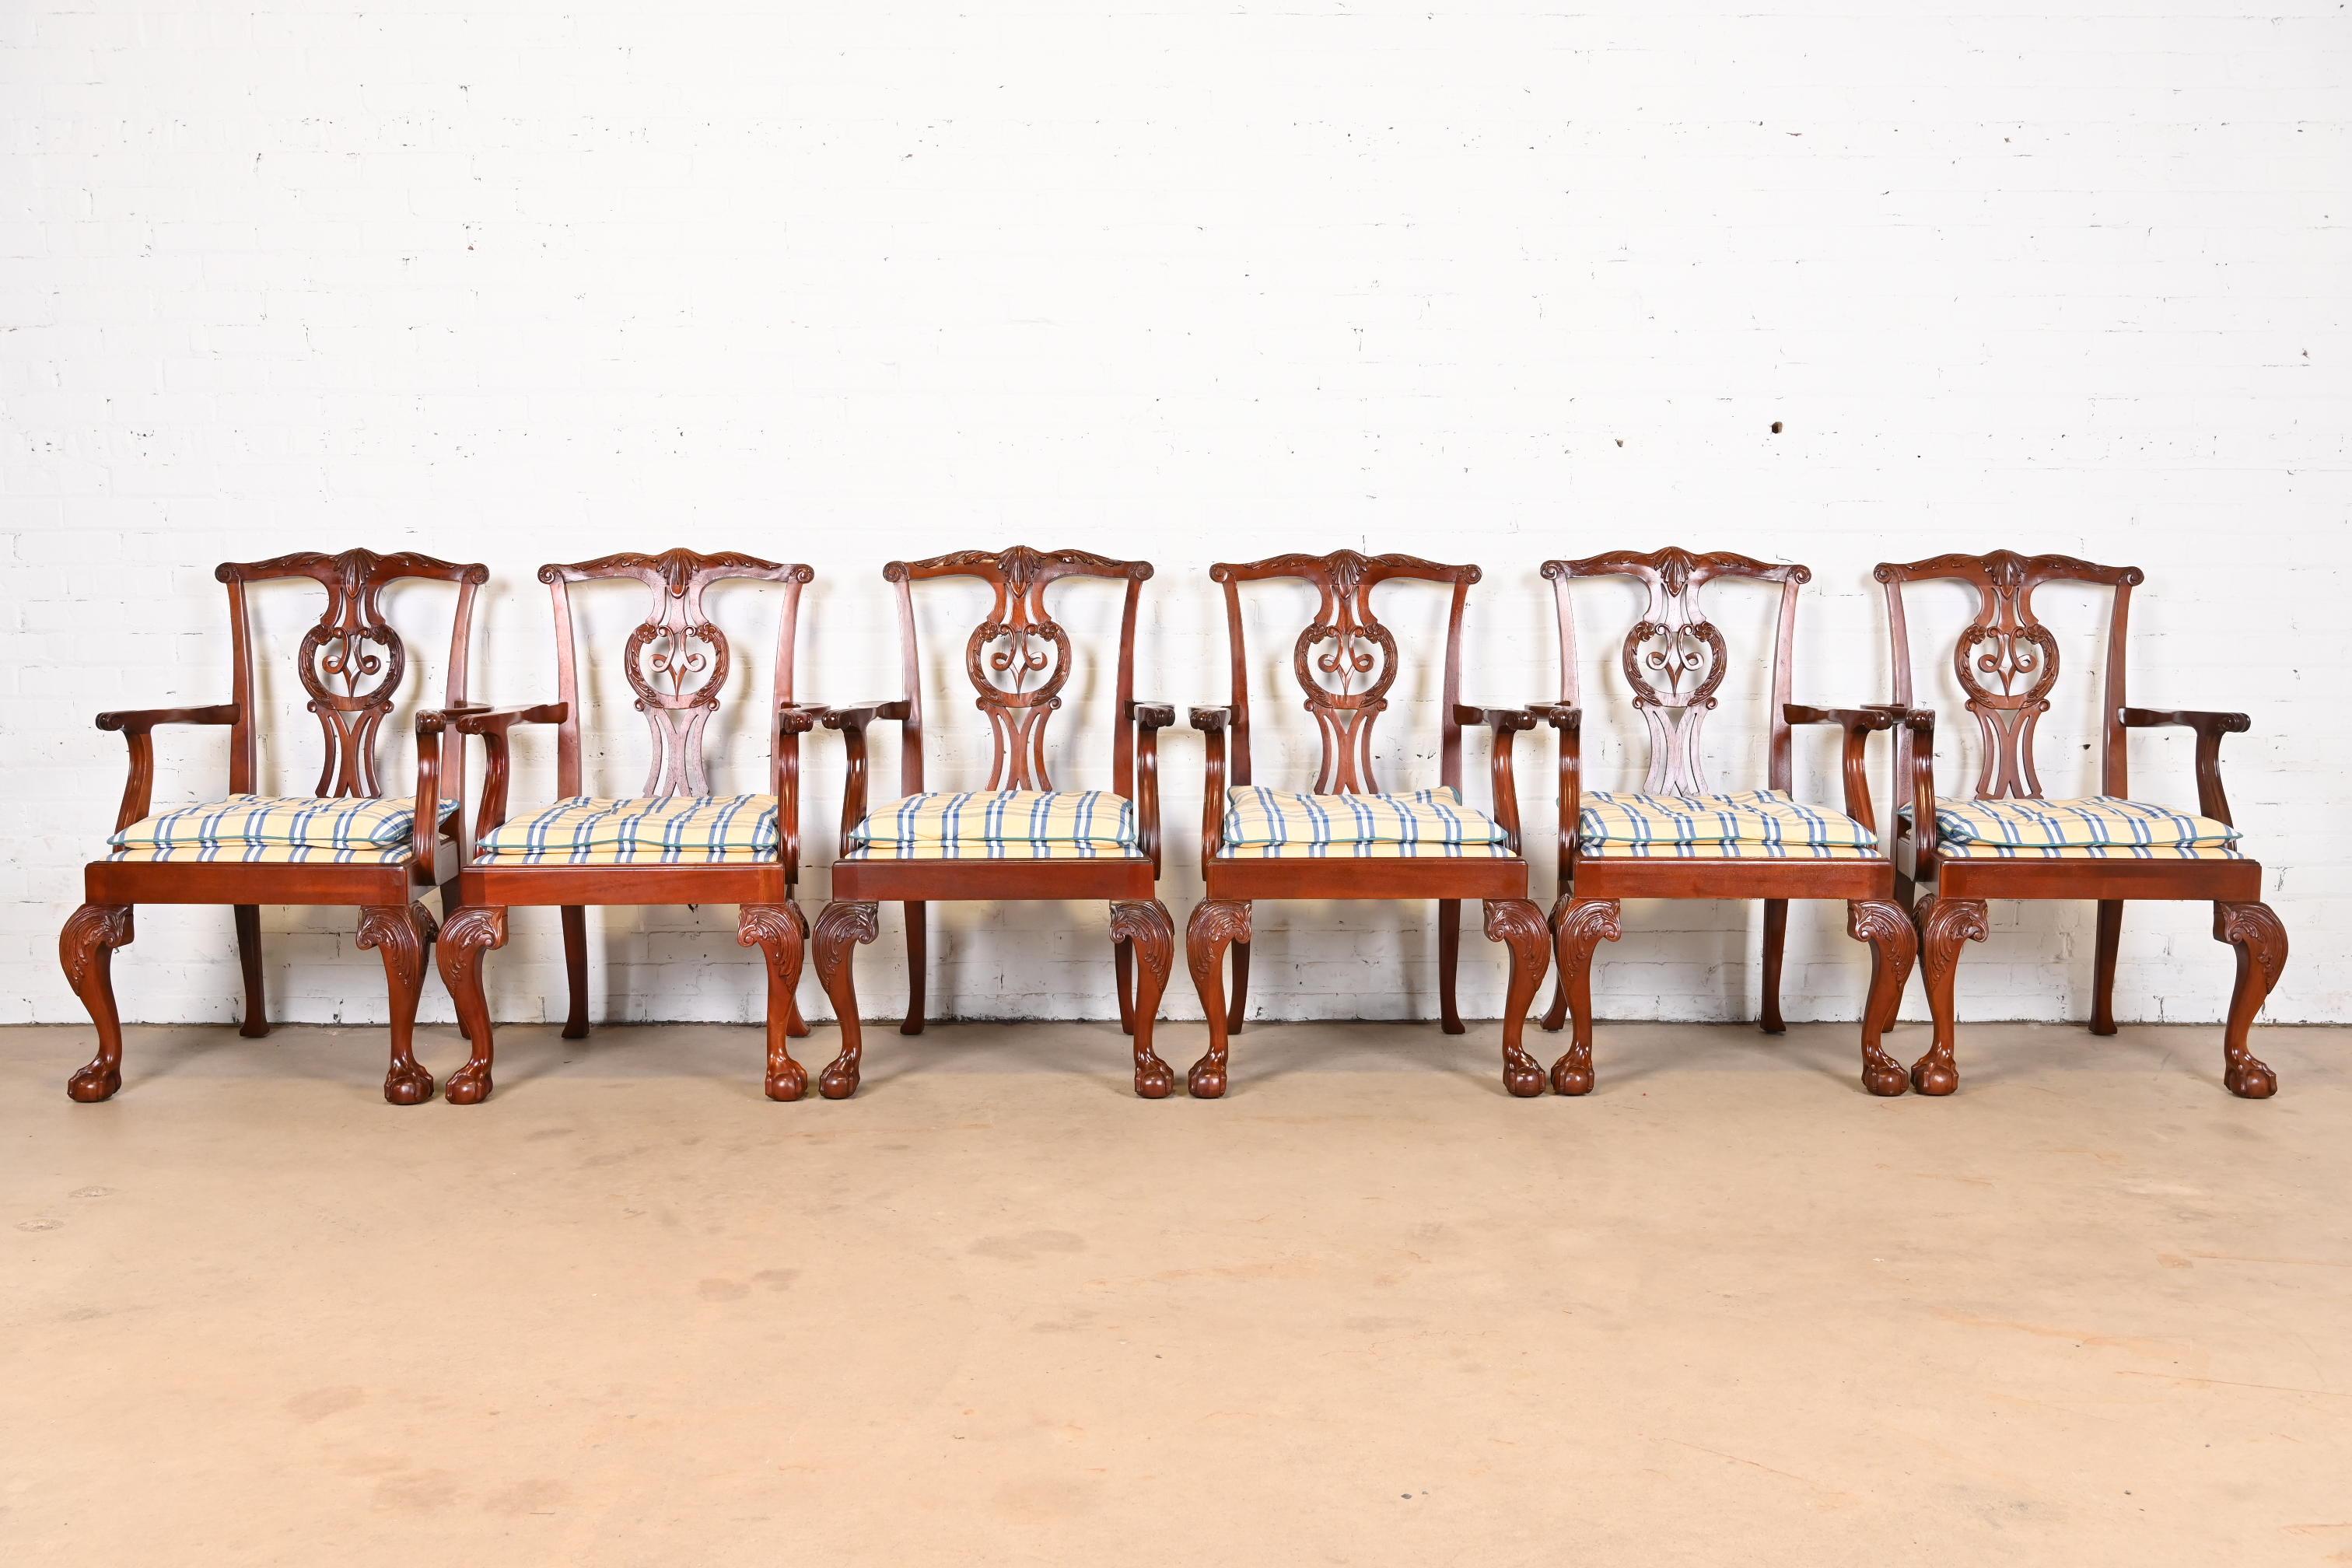 Ensemble exceptionnel de douze fauteuils de salle à manger de style Chippendale ou géorgien

Par Baker Furniture

États-Unis, vers les années 1980

Cadre en acajou massif sculpté, avec pieds cabriole et pieds boule et griffe, et tapisserie écossaise